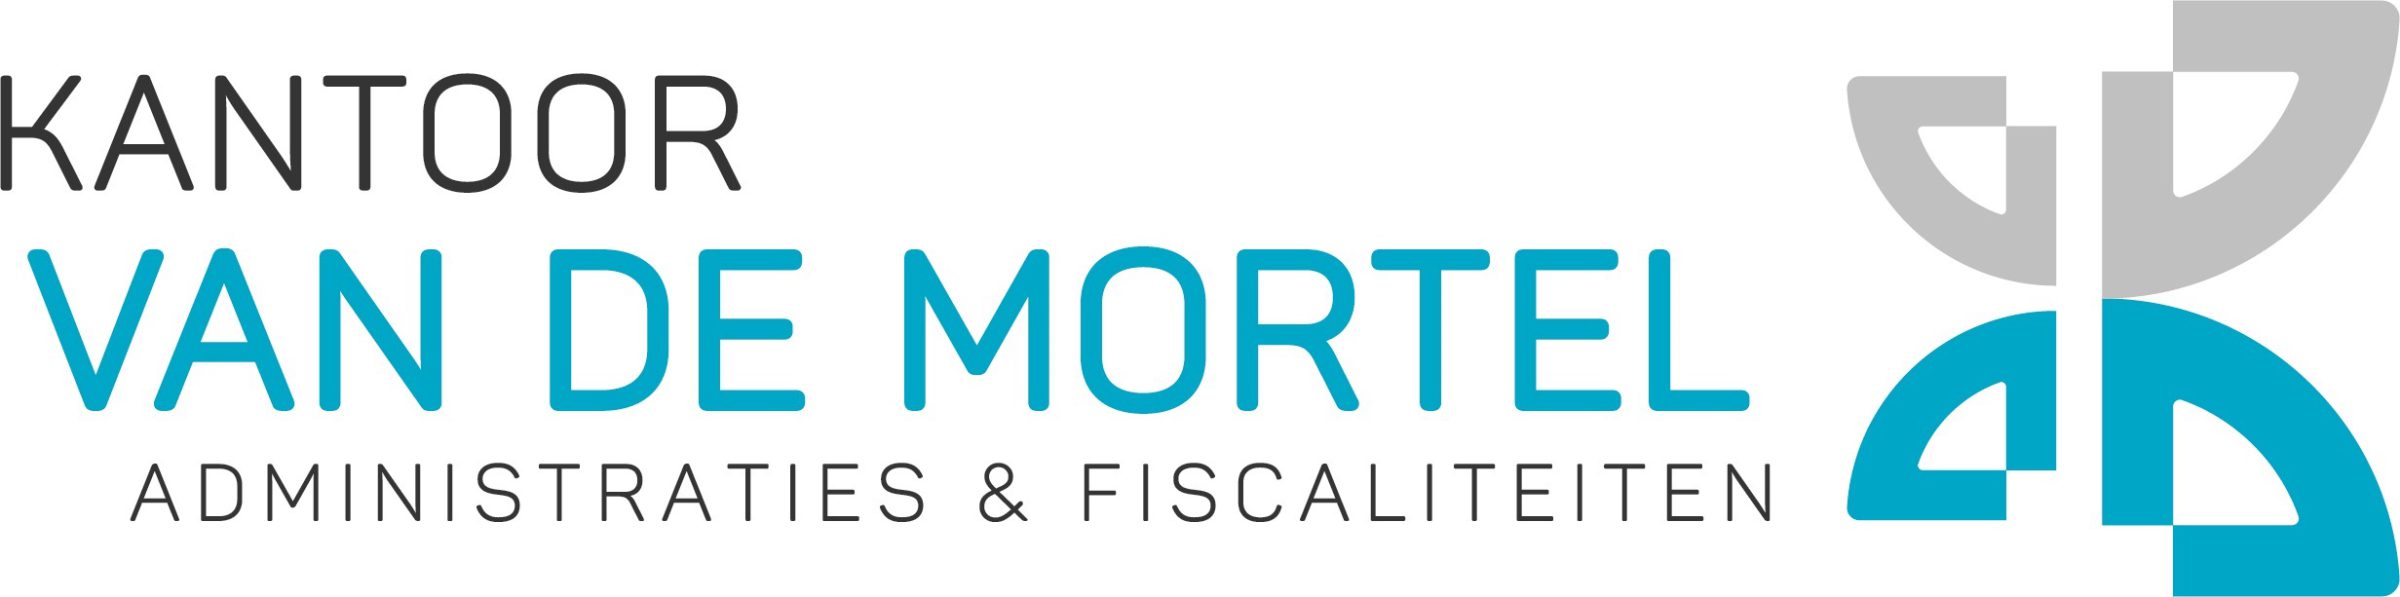 Kantoor van de Mortel, Verwaltung & Steuern, Logo